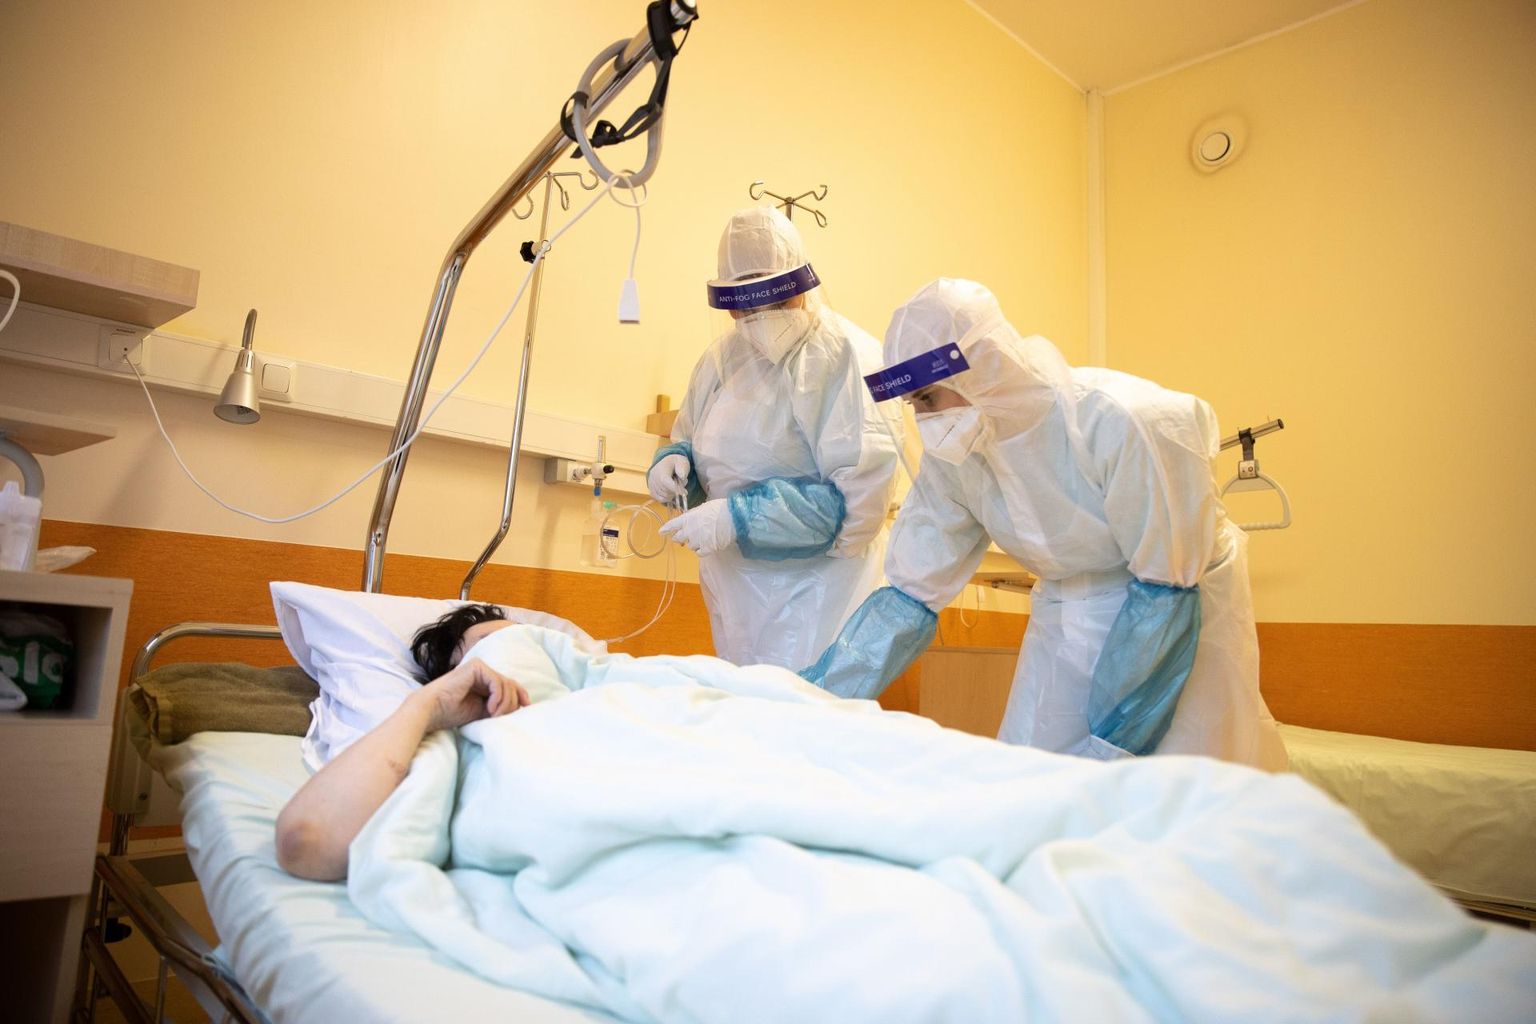 Медработники заботятся о пациенте в Covid-отделении Ида-Таллиннской центральной больницы.